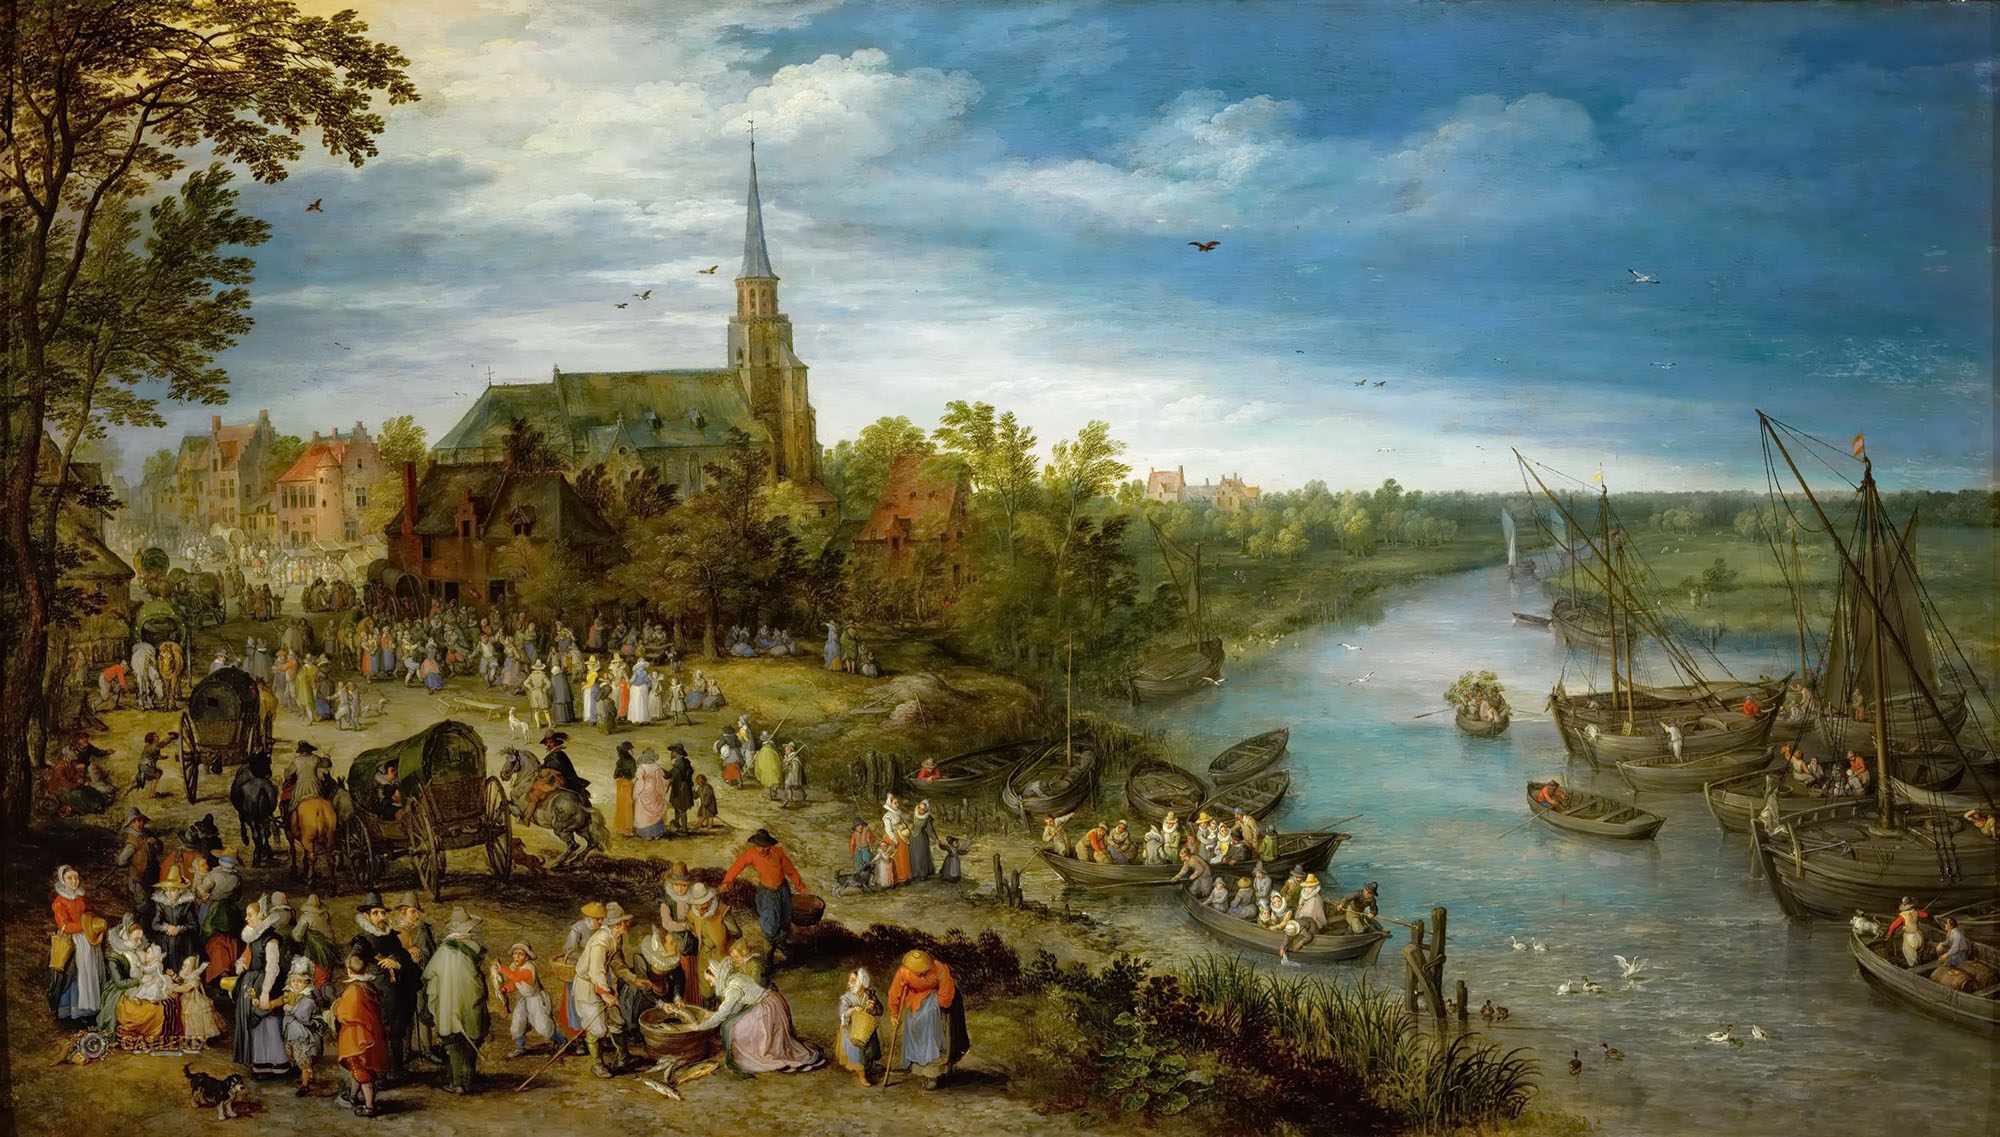 Ян Брейгель Старший. "Деревенская ярмарка". 1614. художественно-исторический музей, Вена.